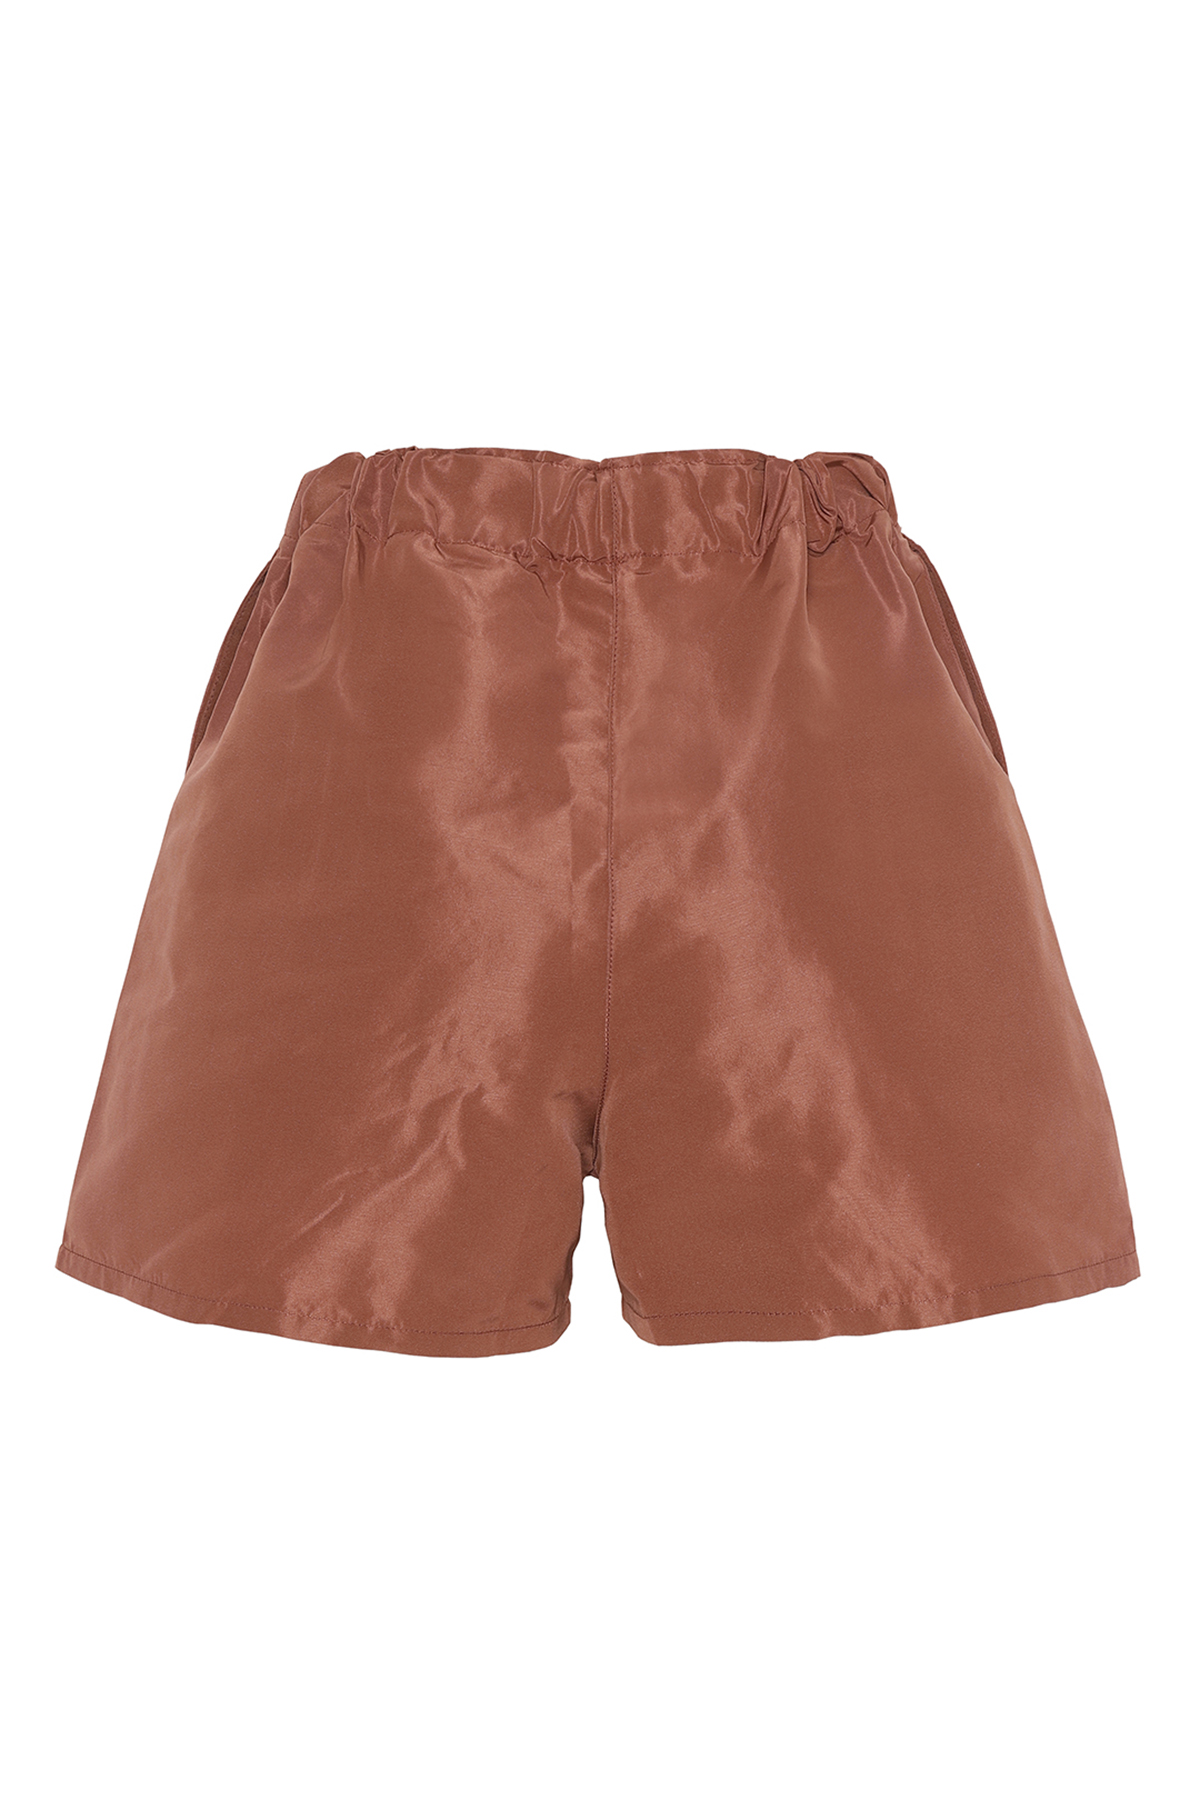 I Blame Lulu Twiggy Shorts - Terracotta